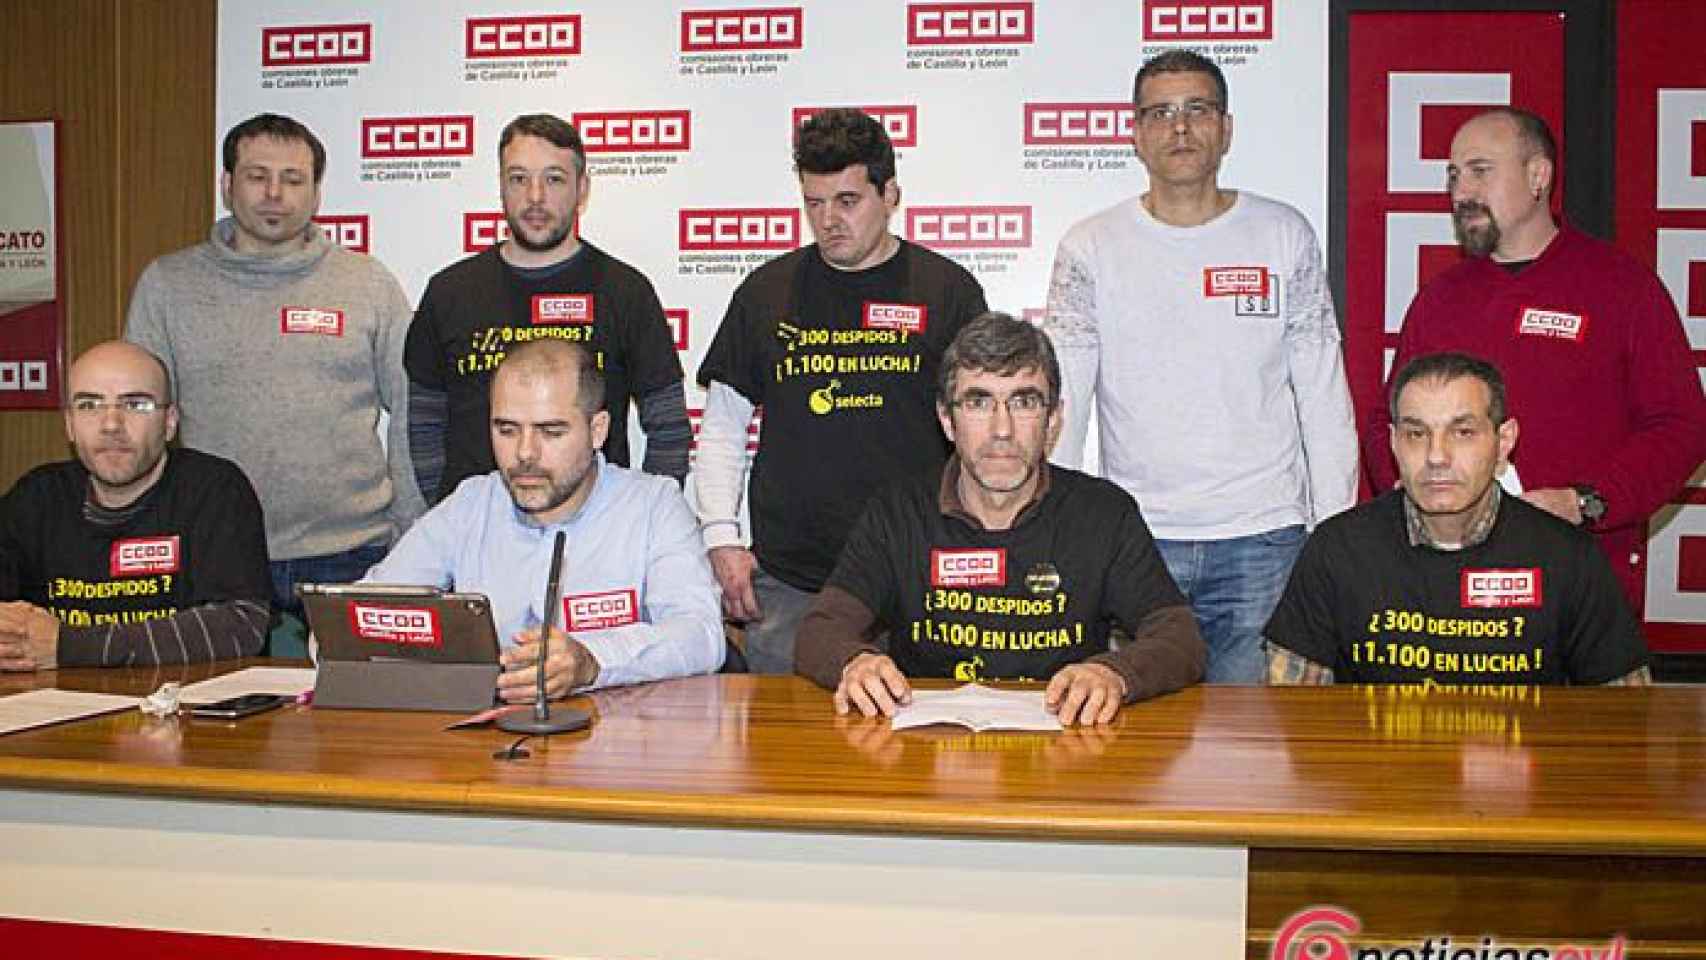 Valladolid-selecta-ccoo-ere-trabajadores